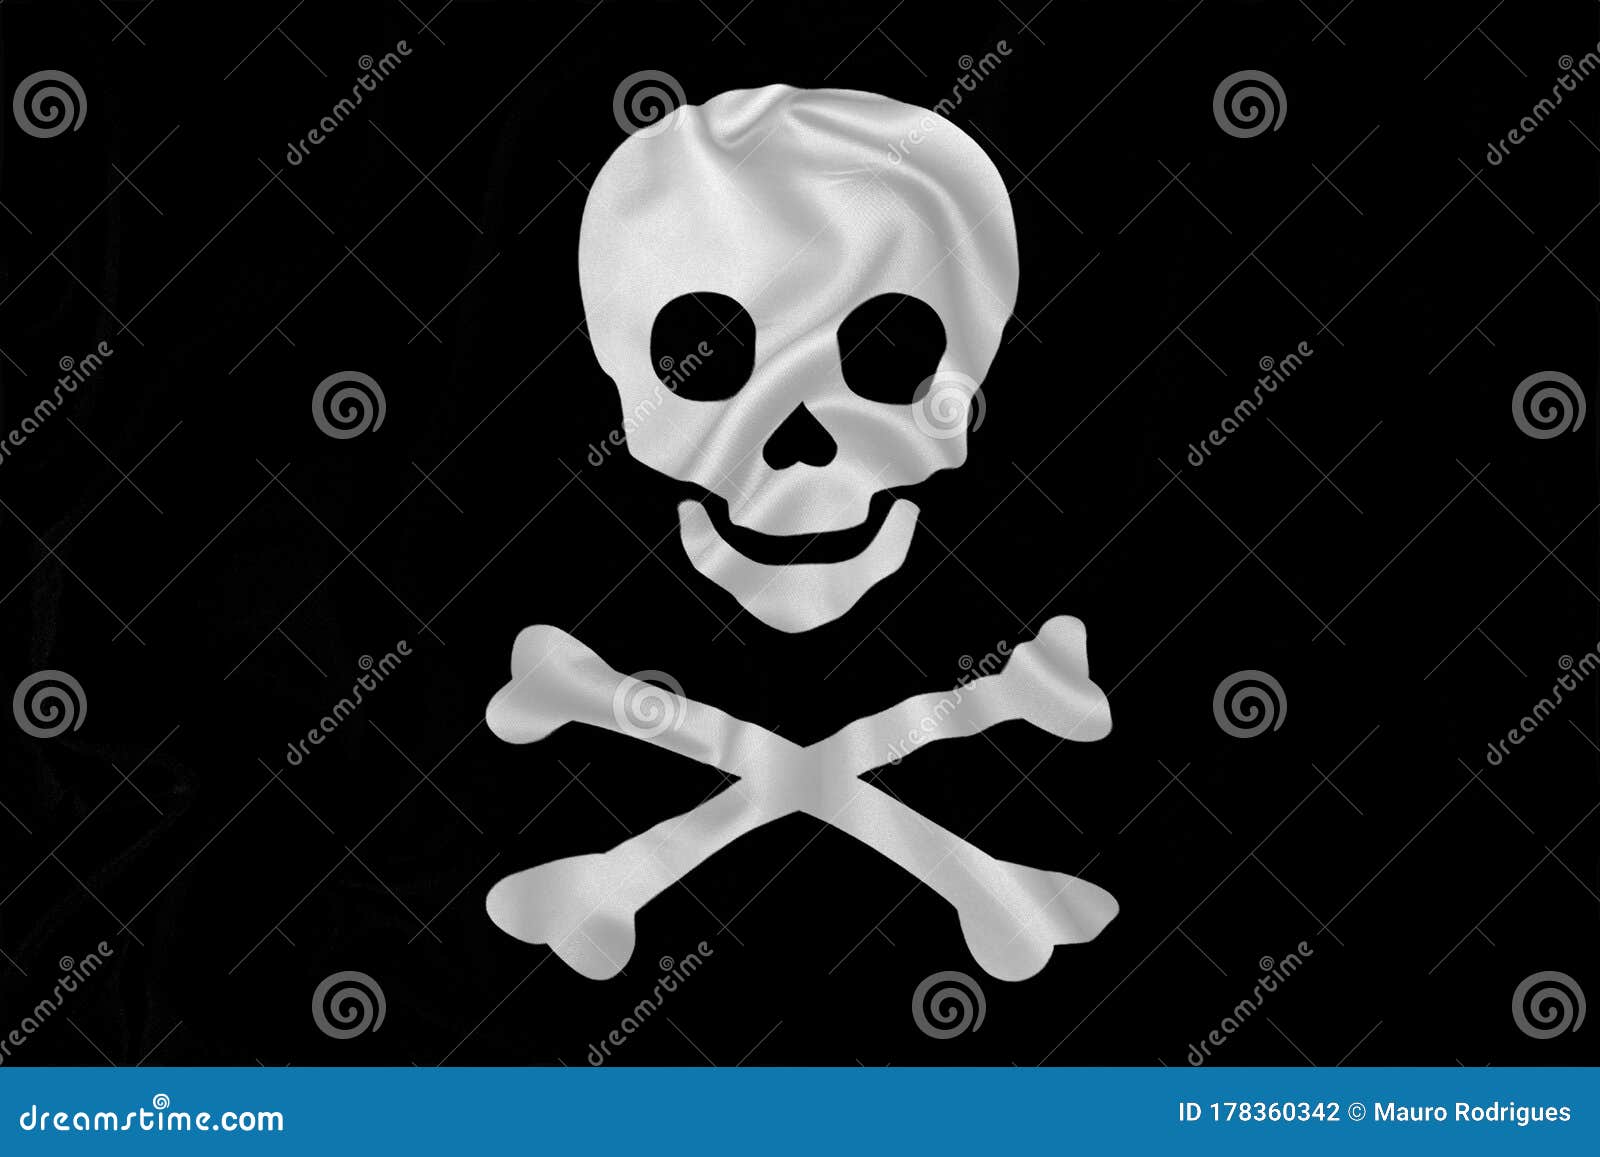 加勒比海盗骷髅设计元素素材免费下载(图片编号:4868286)-六图网